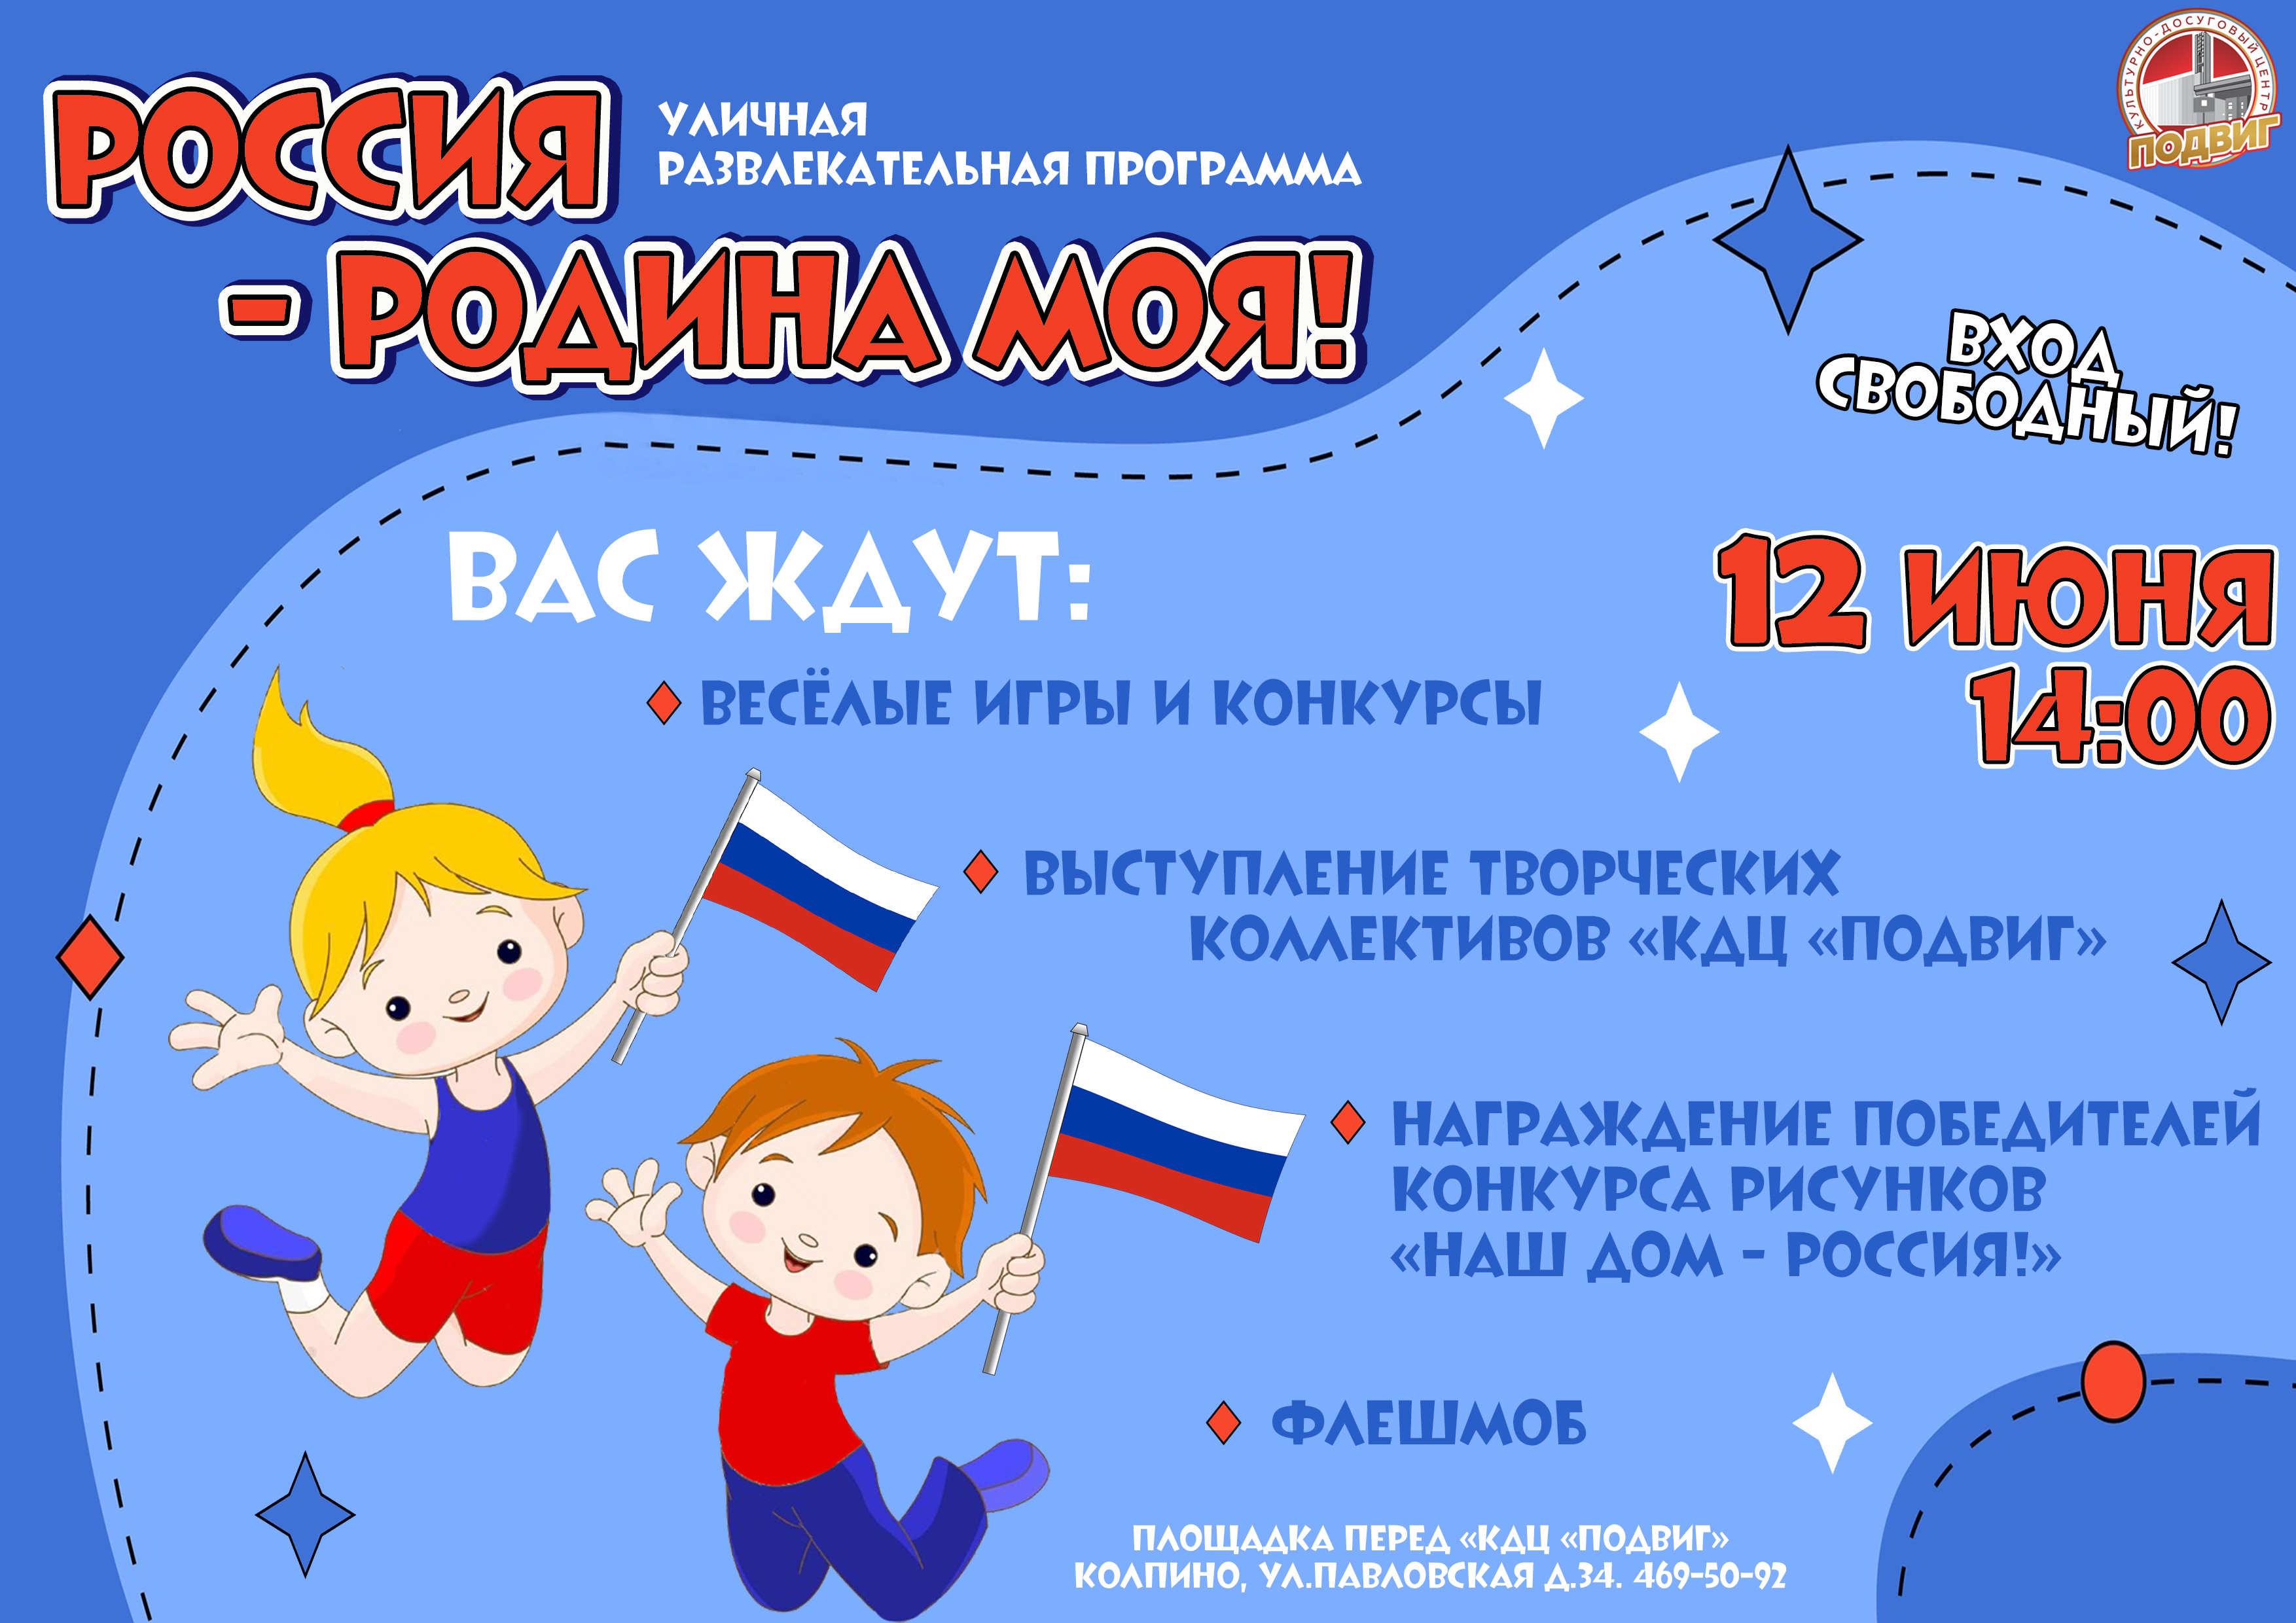 12 июня в нашей стране отмечается главный государственный праздник - День России. Это событие - замечательный повод показать детям нашу любовь и уважение к самой красивой, огромной и многонациональной стране.